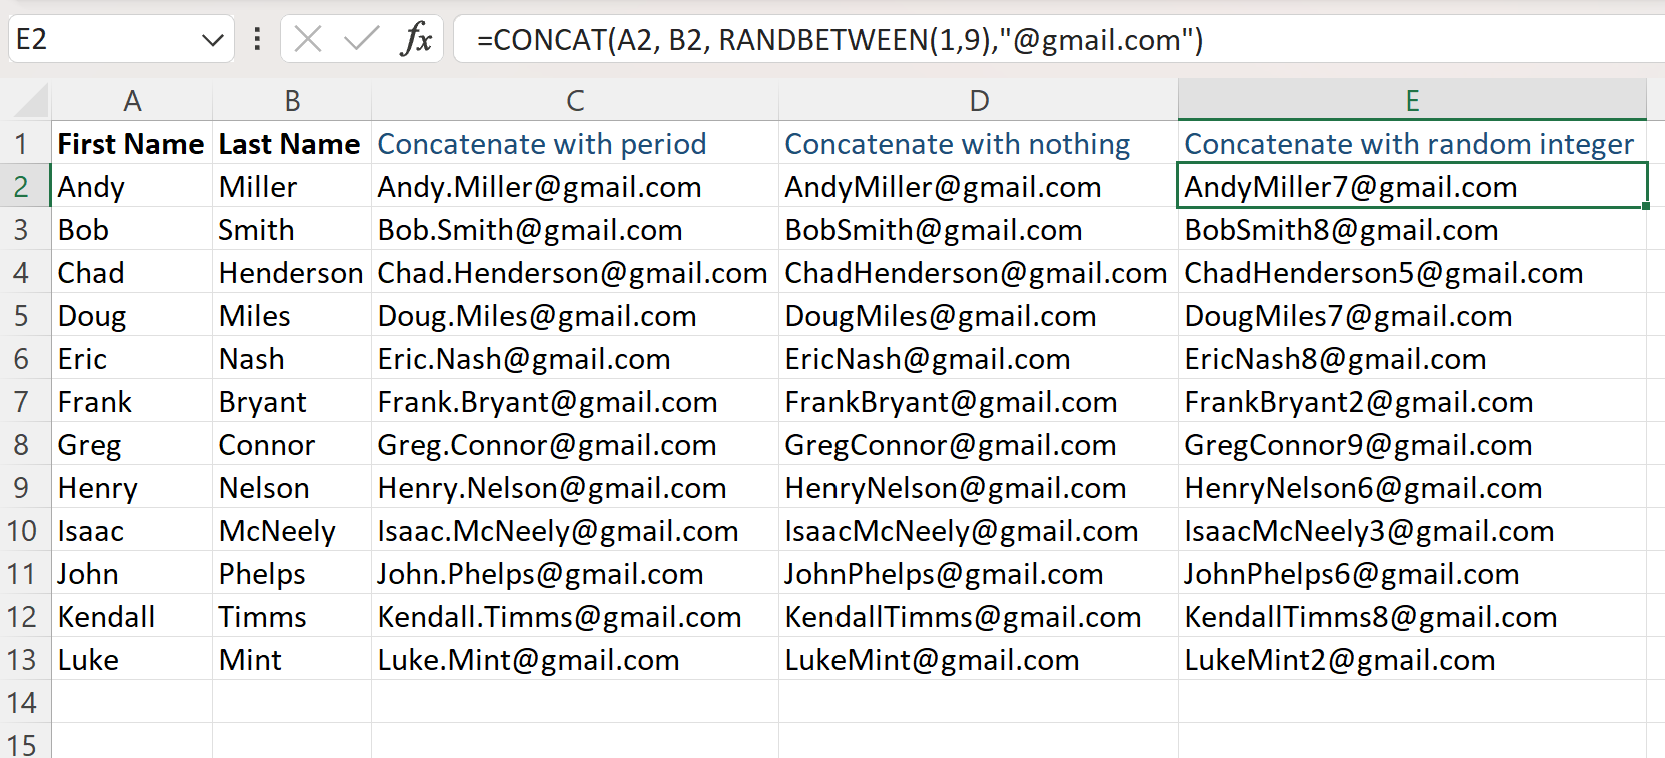 Excel aggiunge l'indirizzo email al nome